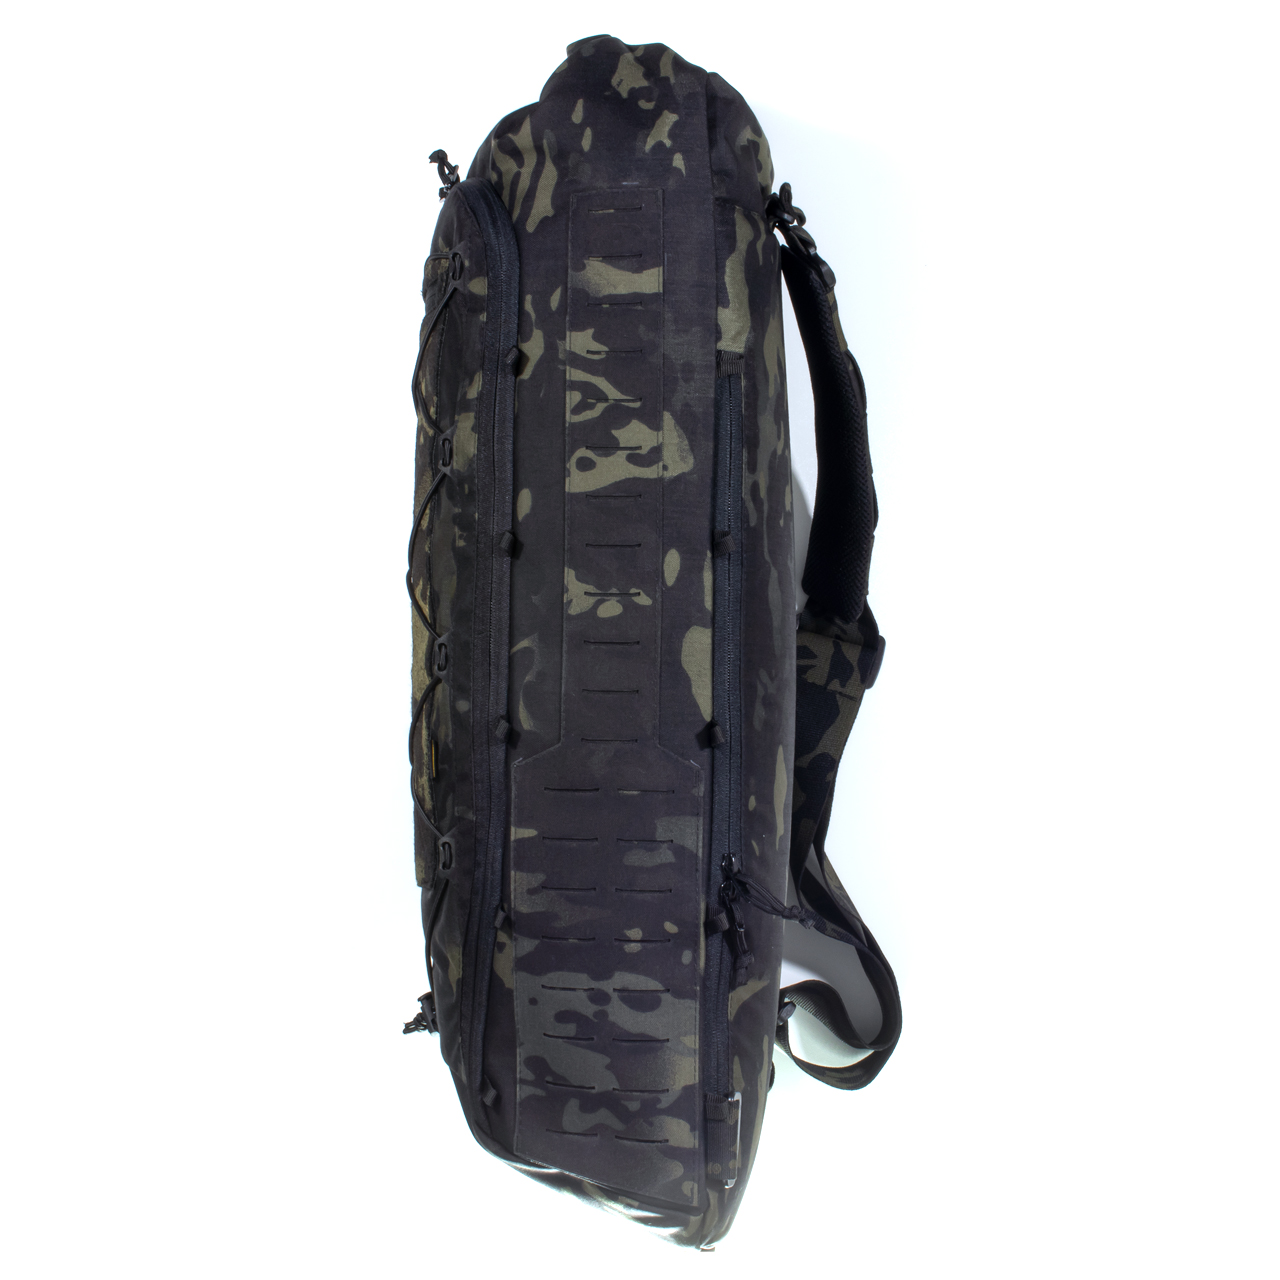 Sling-Back-Bag "SKULDER BAG", multicam® black